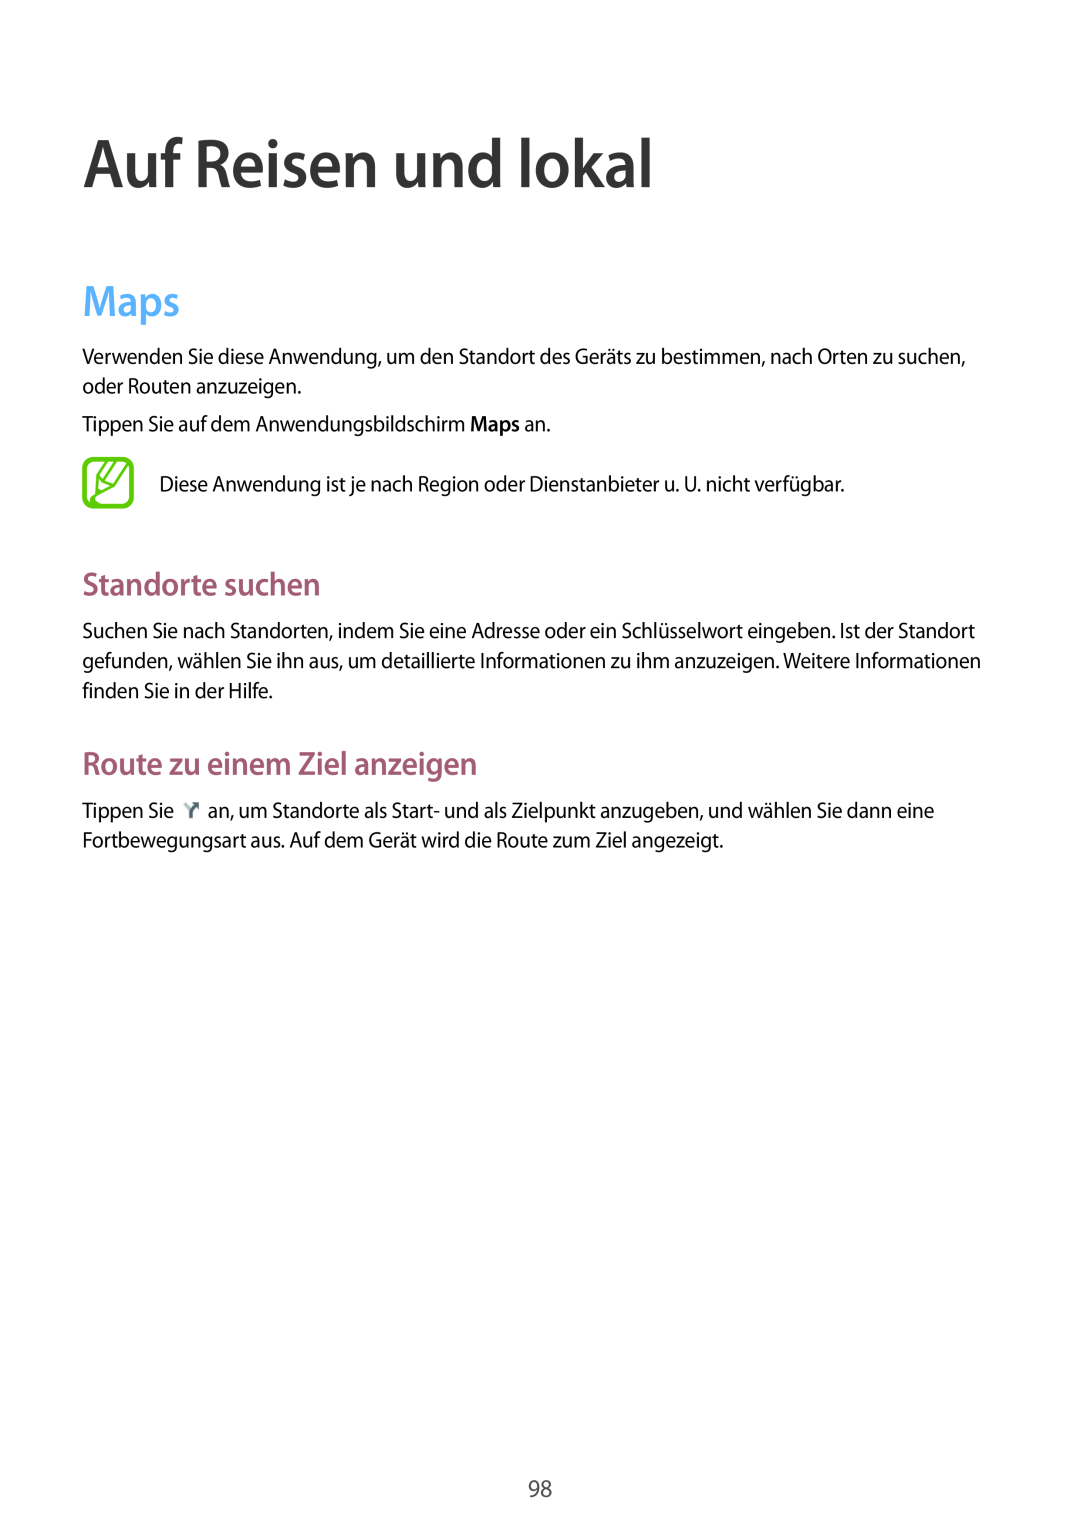 Samsung SM-T3100MKAEUR, SM-T3100ZWAXEO manual Auf Reisen und lokal, Maps, Standorte suchen, Route zu einem Ziel anzeigen 